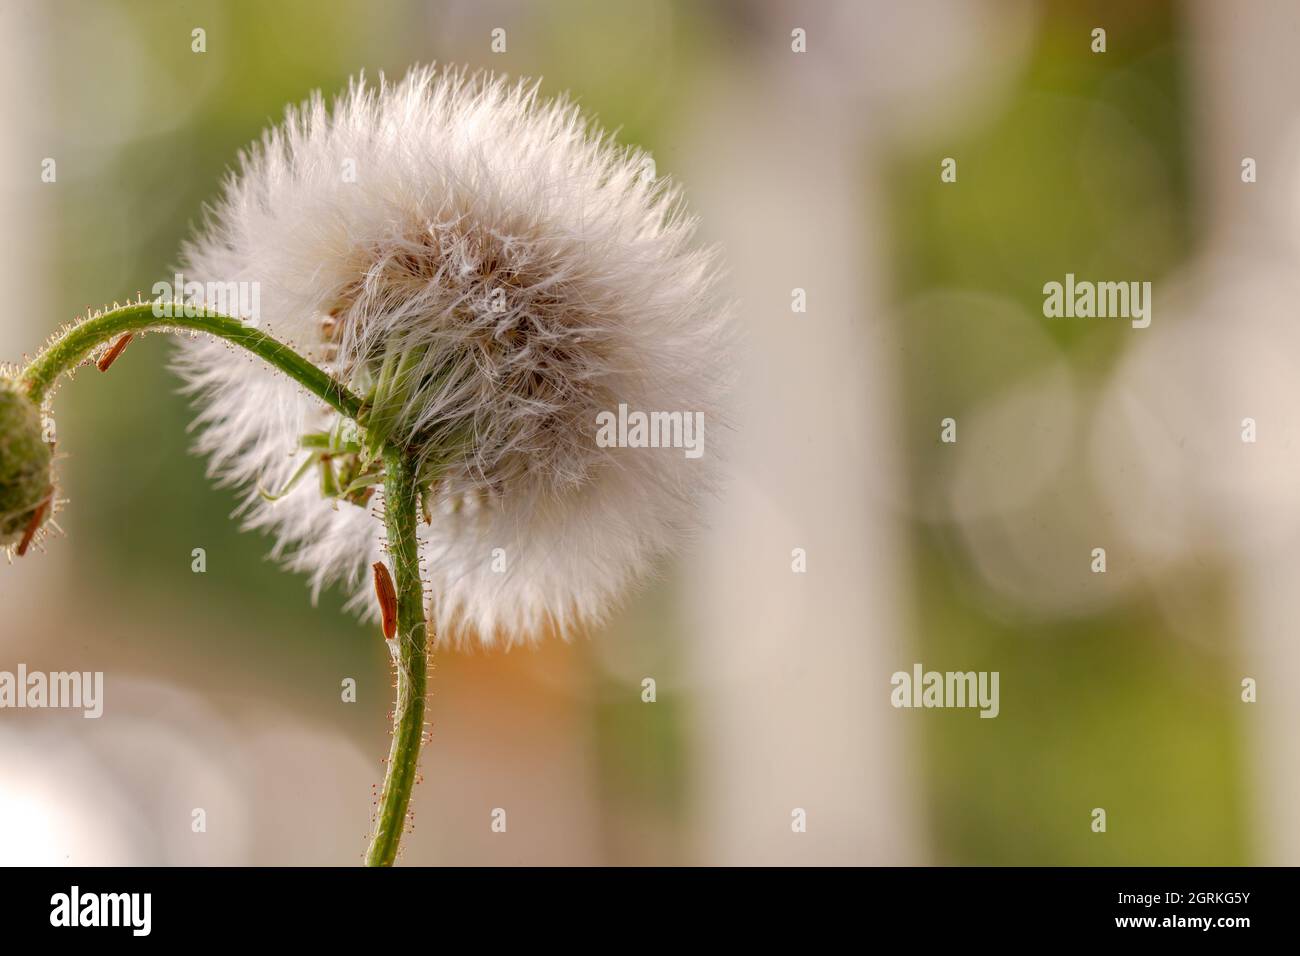 Fiore di tasselflower lilla, di forma rotonda bianca, pronto a far volare i suoi semi Foto Stock